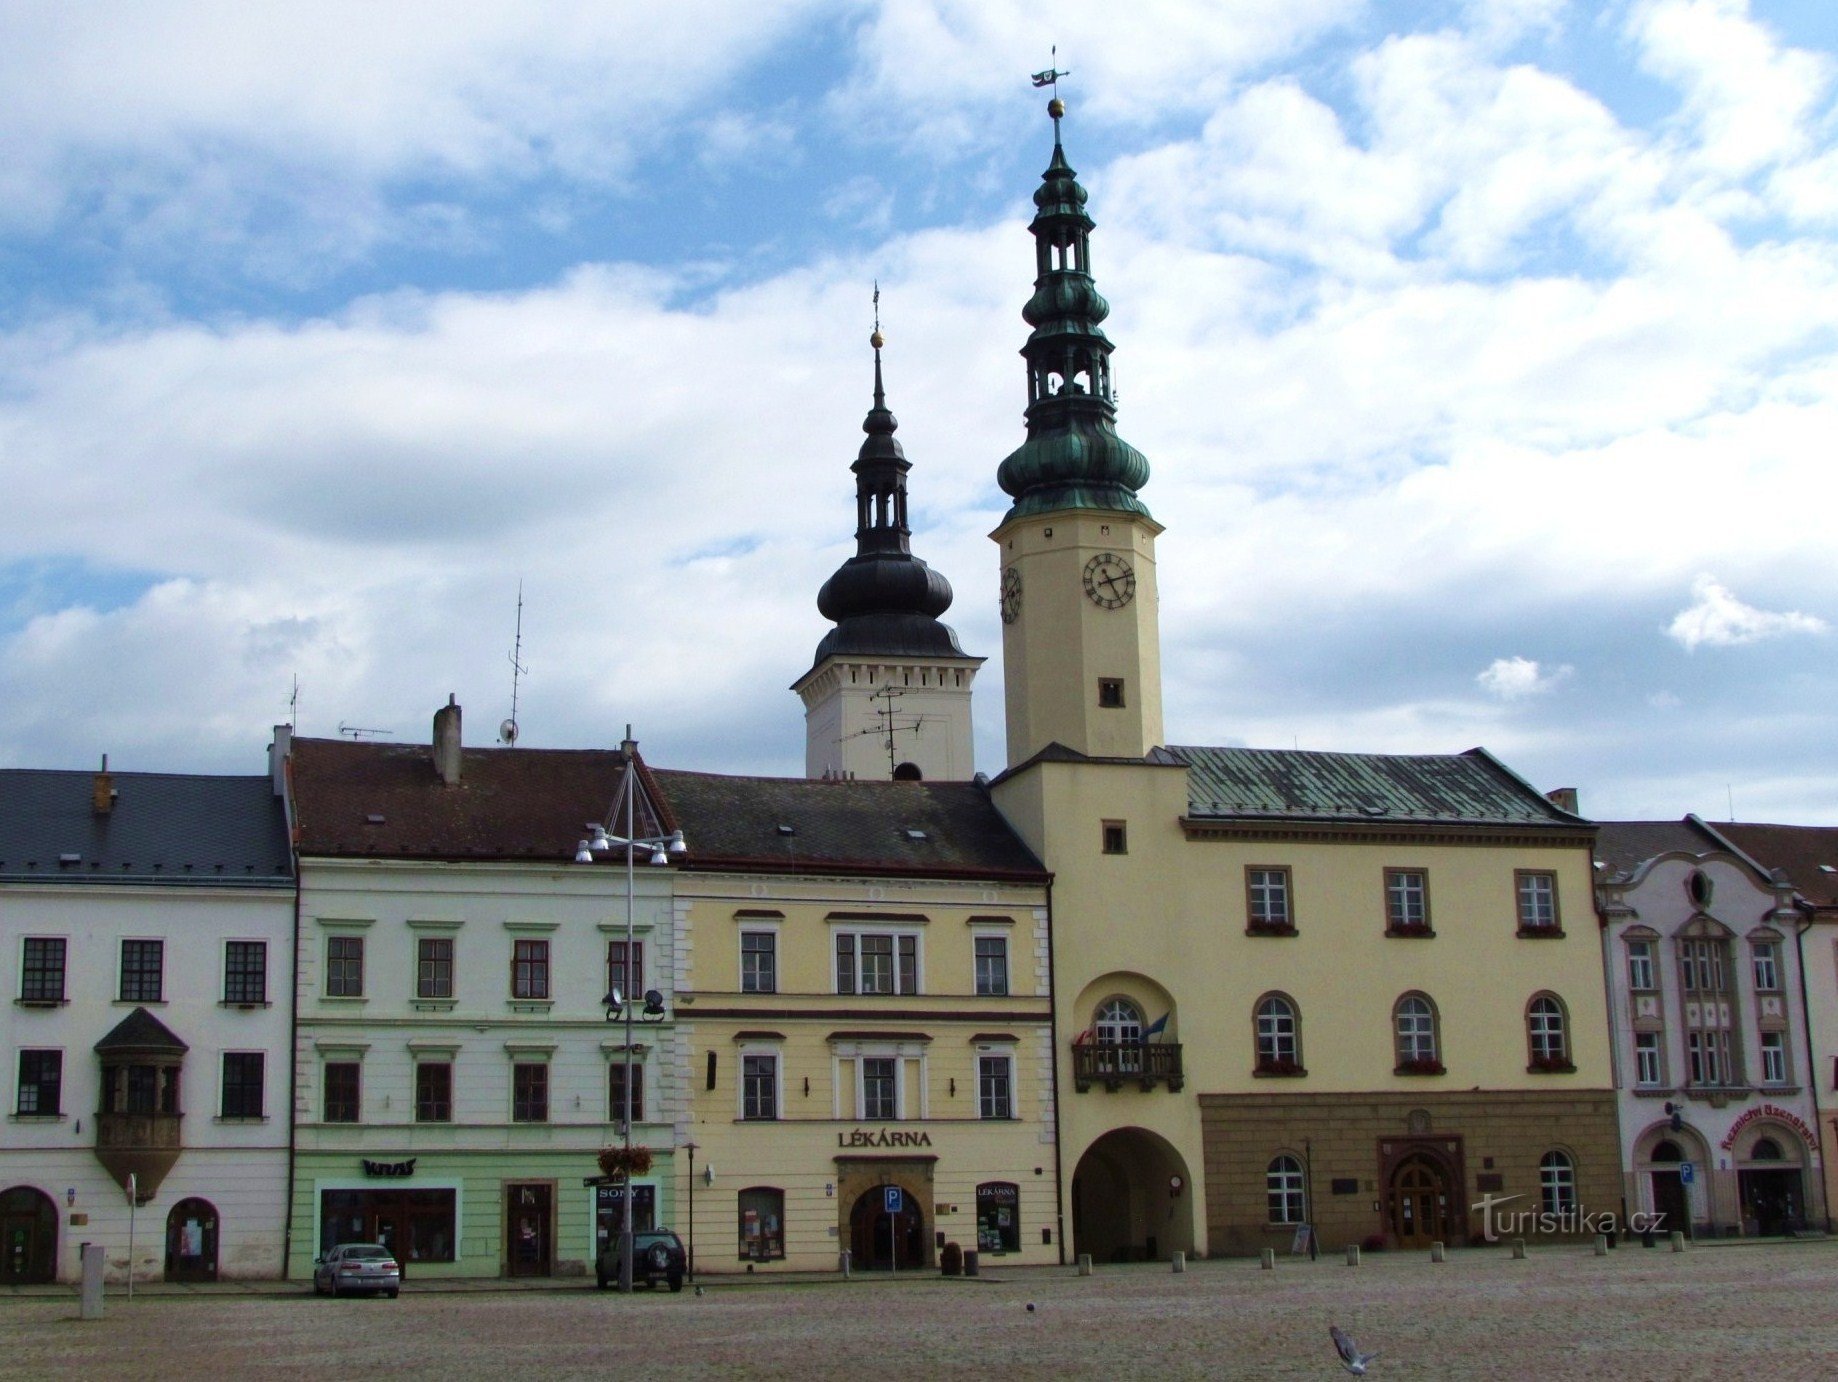 Gradska vijećnica s tornjem u Moravská Třebová